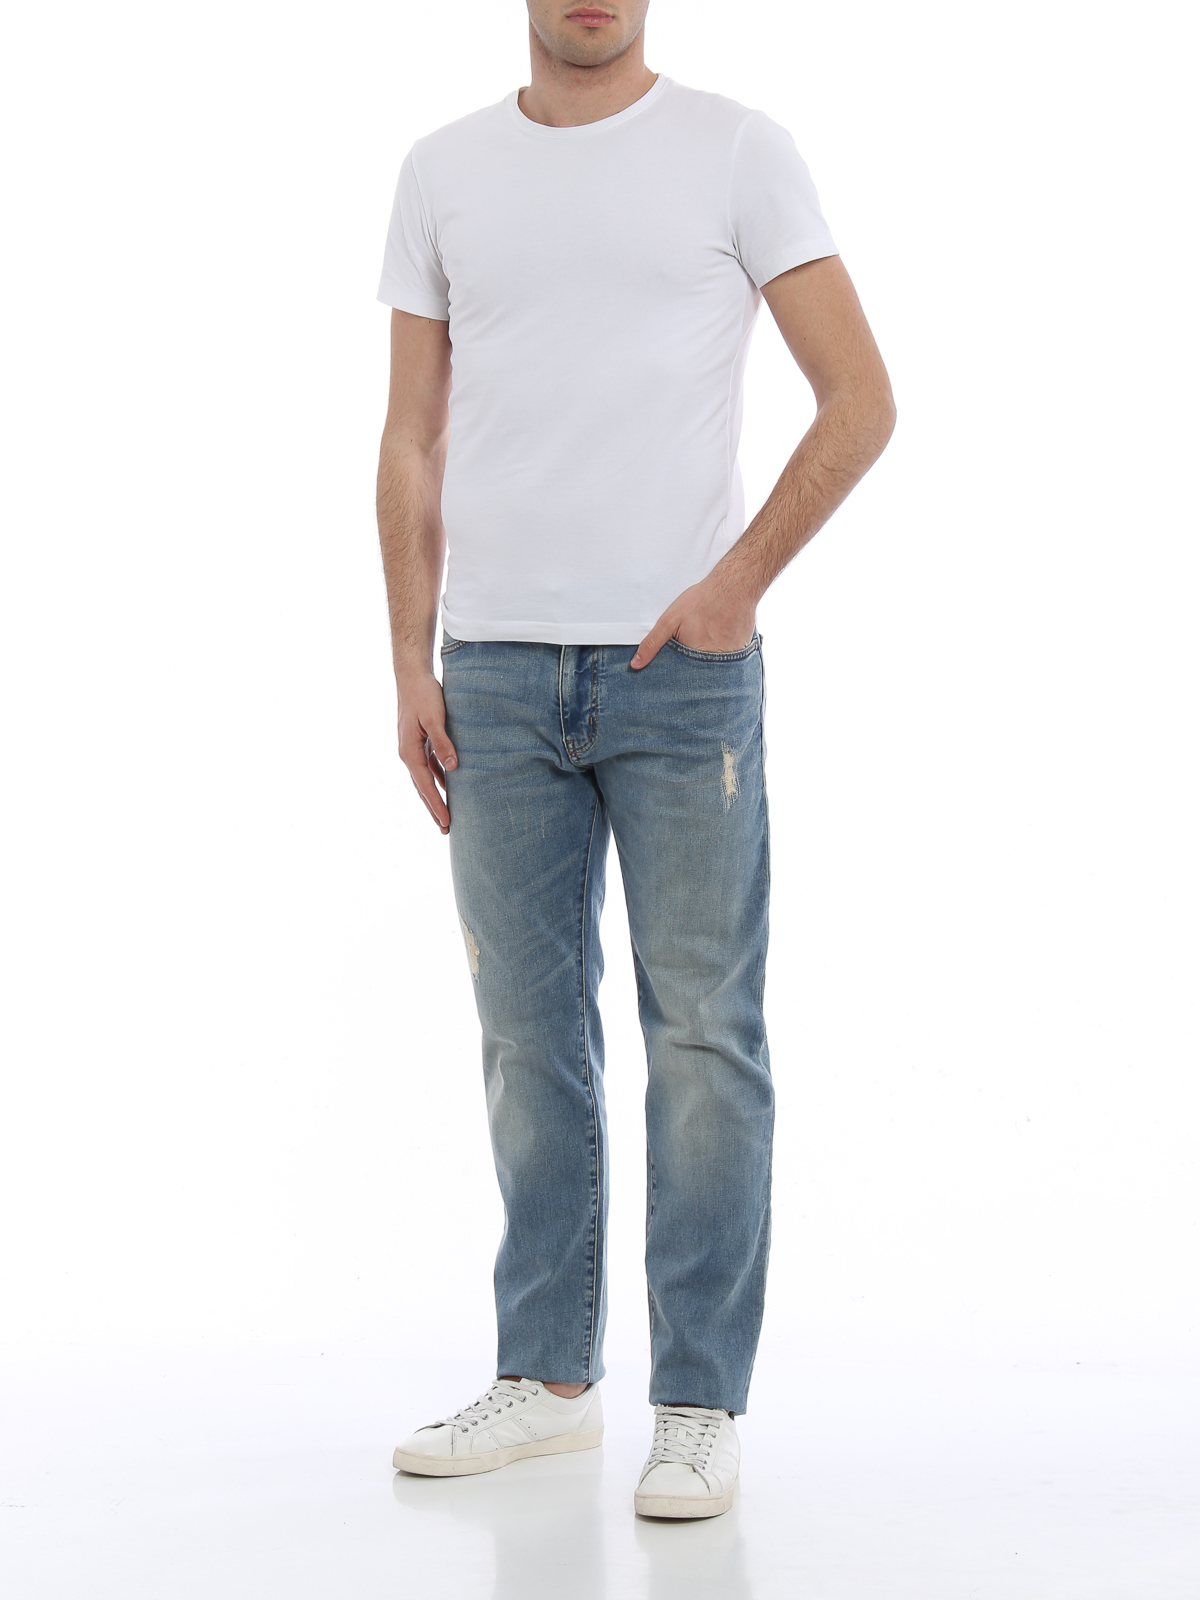 Straight leg Armani Jeans - J45 distressed jeans - 3Y6J456DBMZ1500